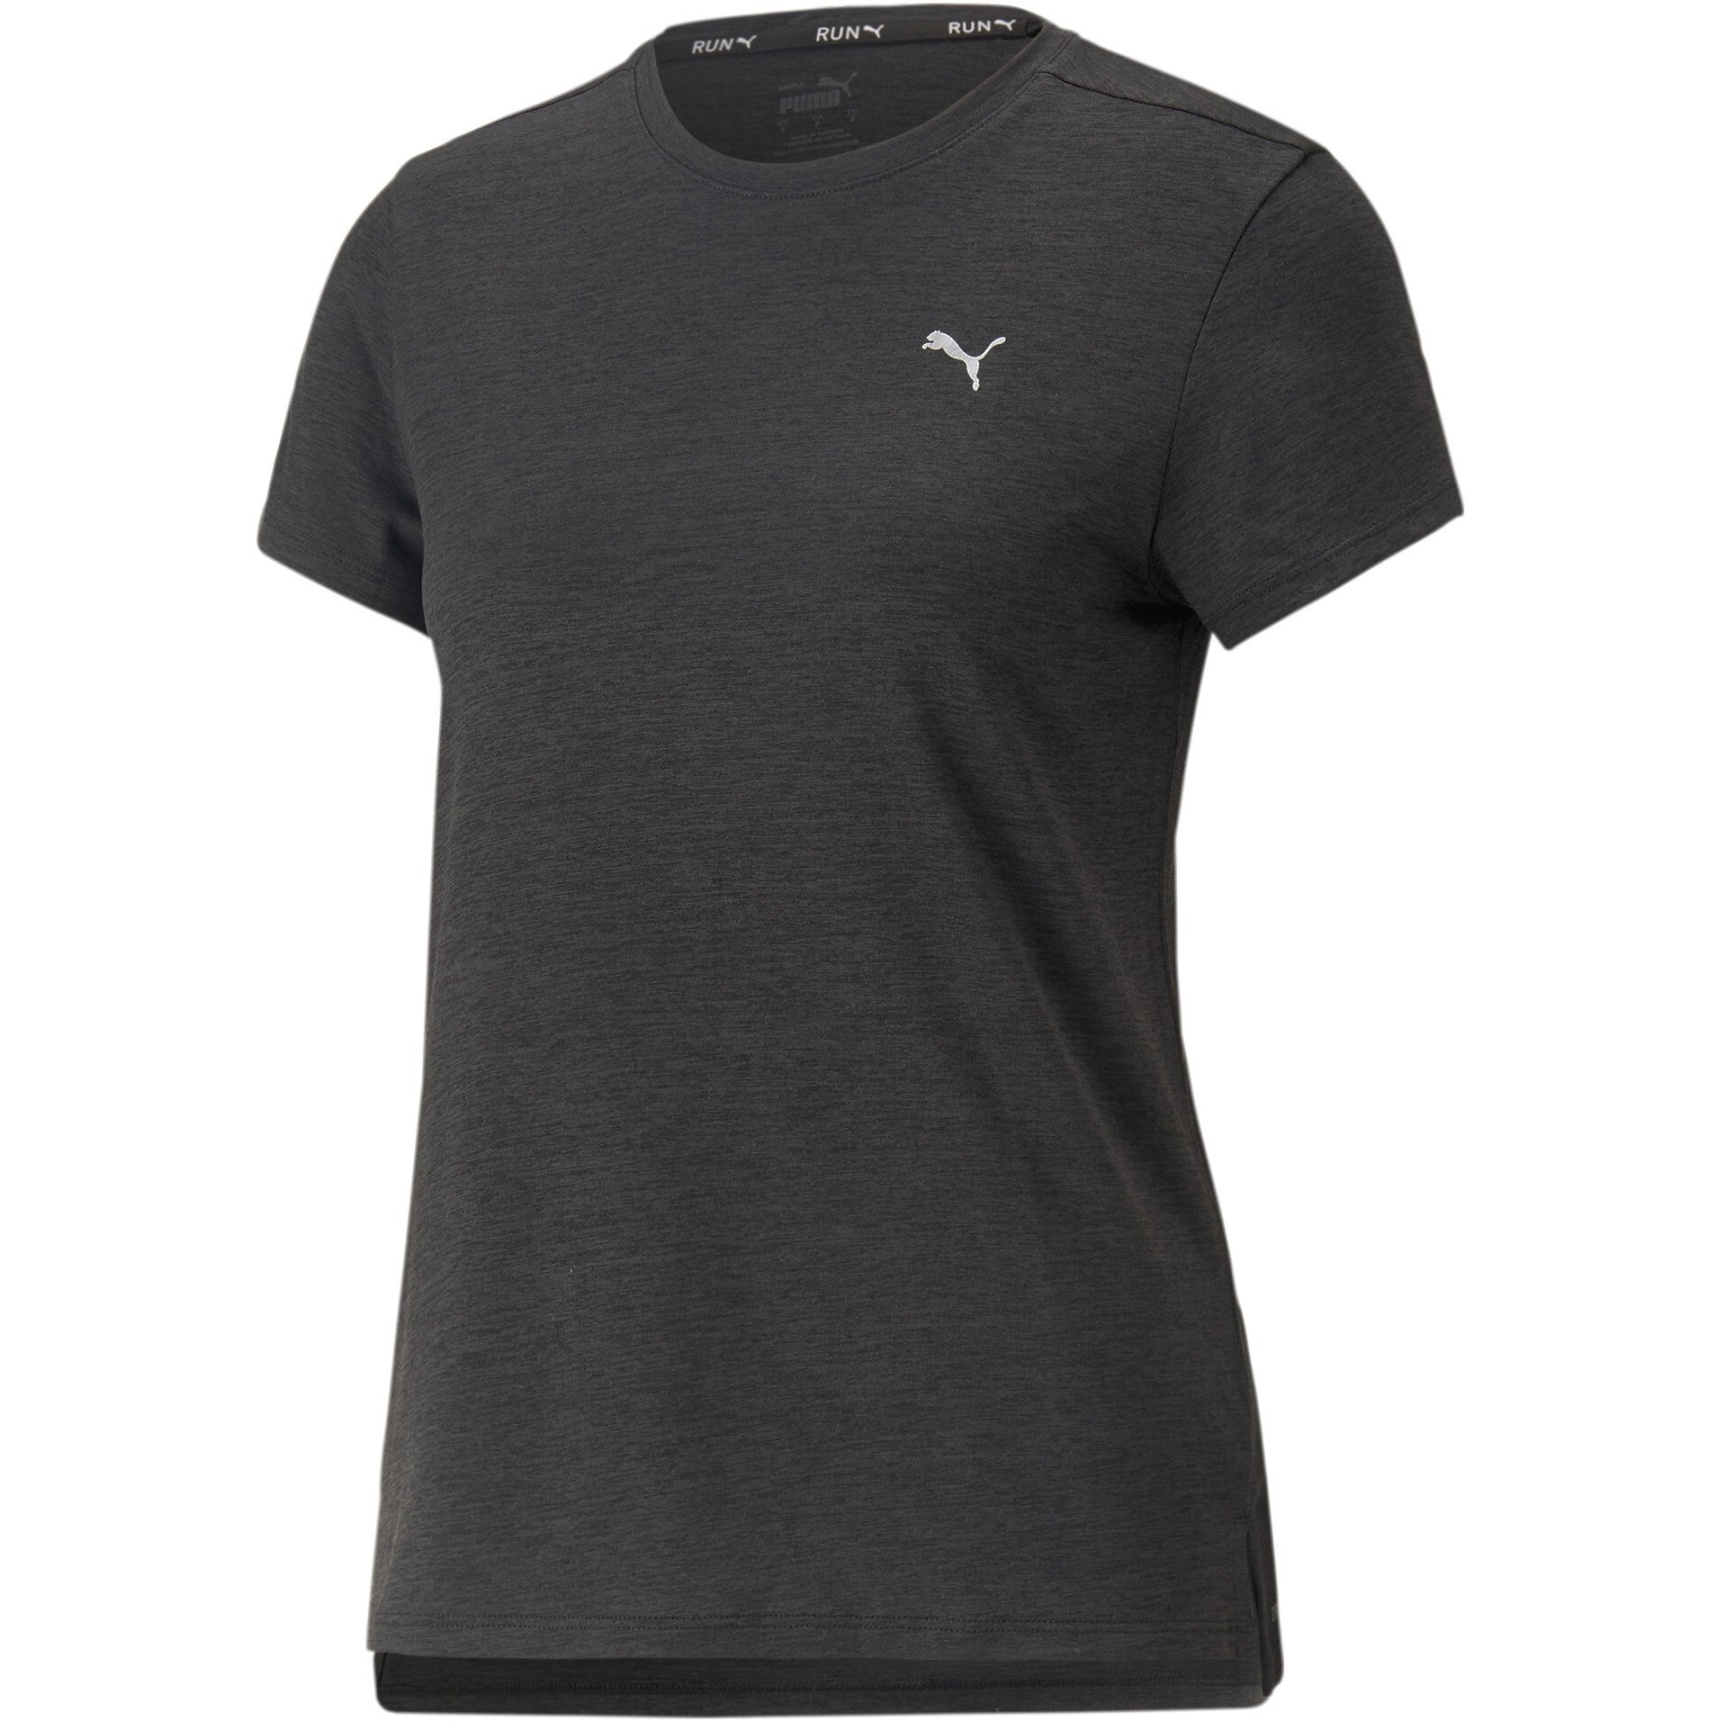 Produktbild von Puma Run Favorite Heather T-Shirt Damen - Puma Black